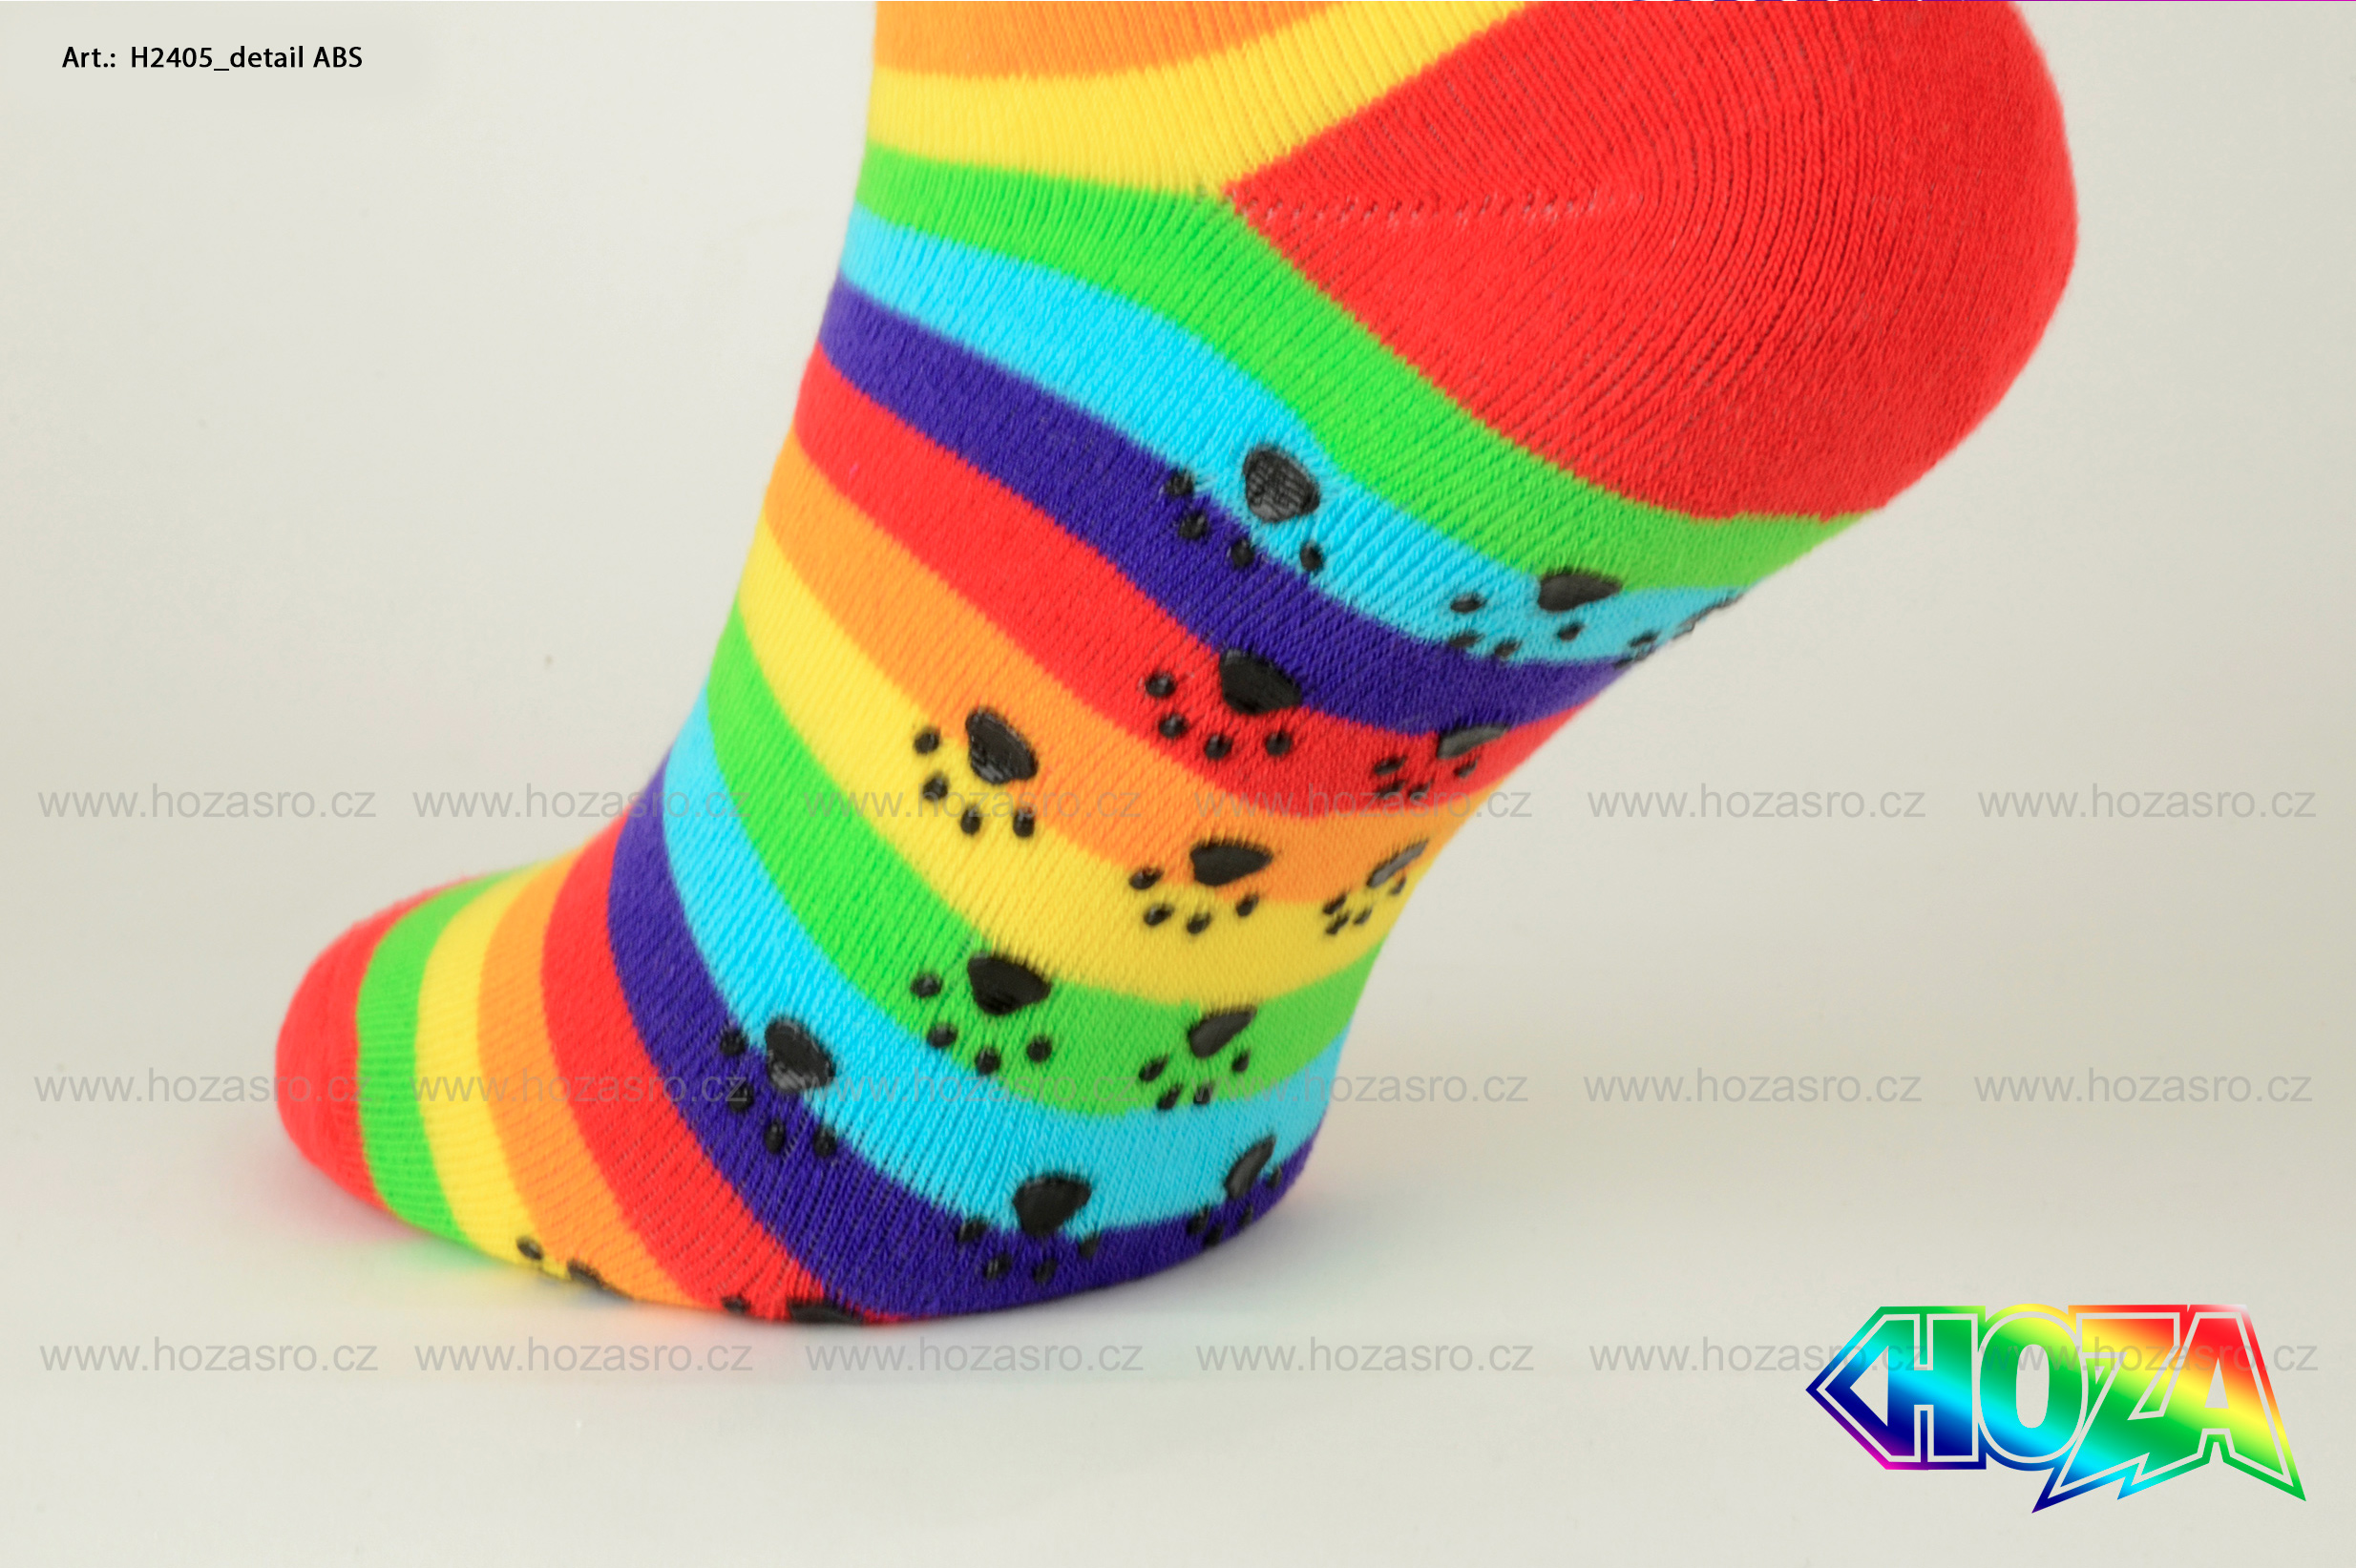 Dámské ponožky HOZA THERMO Froté - ABS ťapky od 129kč - H2405